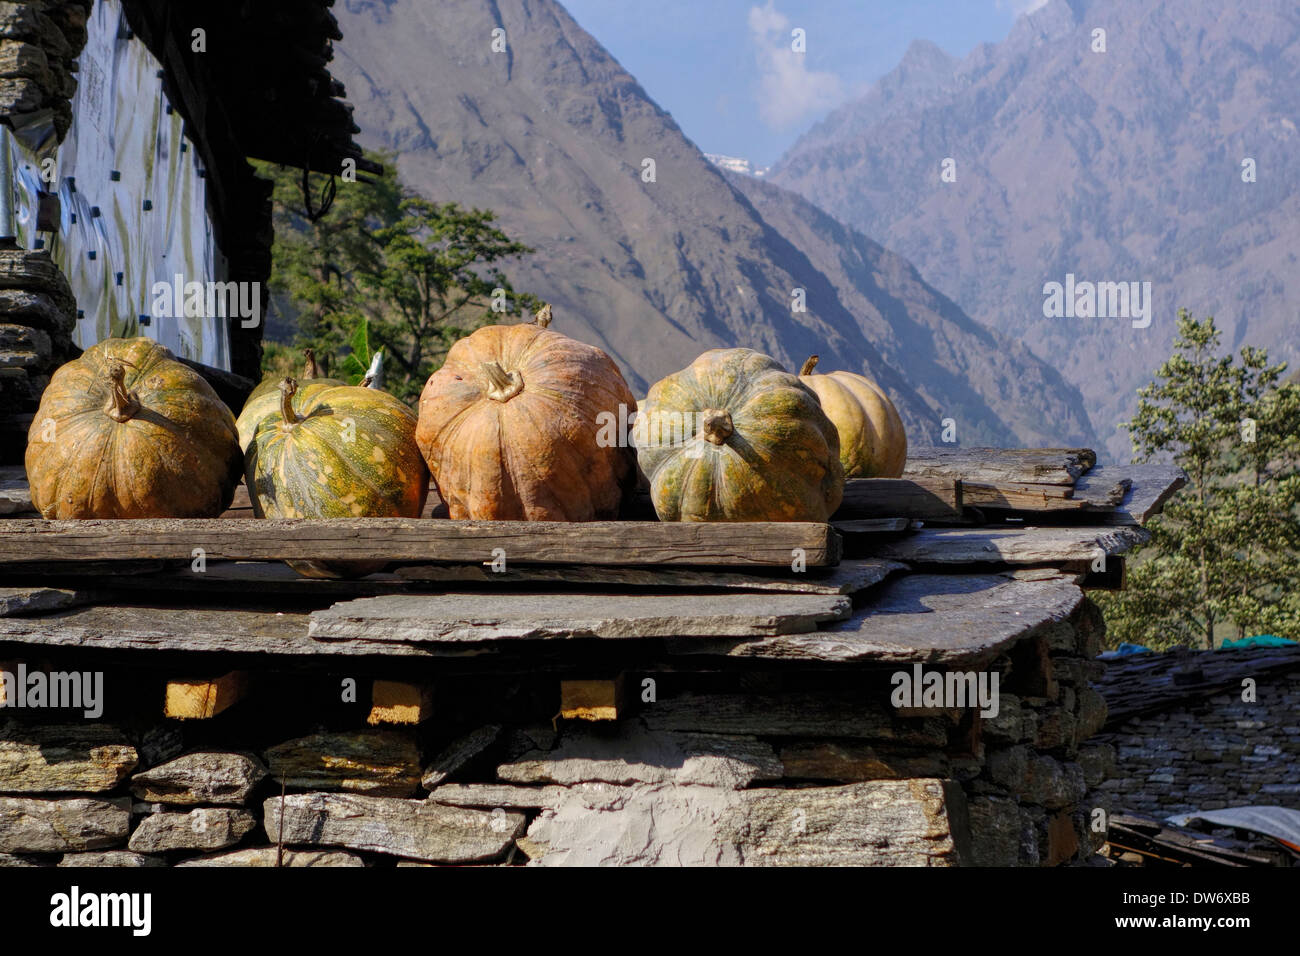 Squash, Heilung auf dem Dach eines Hauses in der Manaslu Region Nepals. Stockfoto